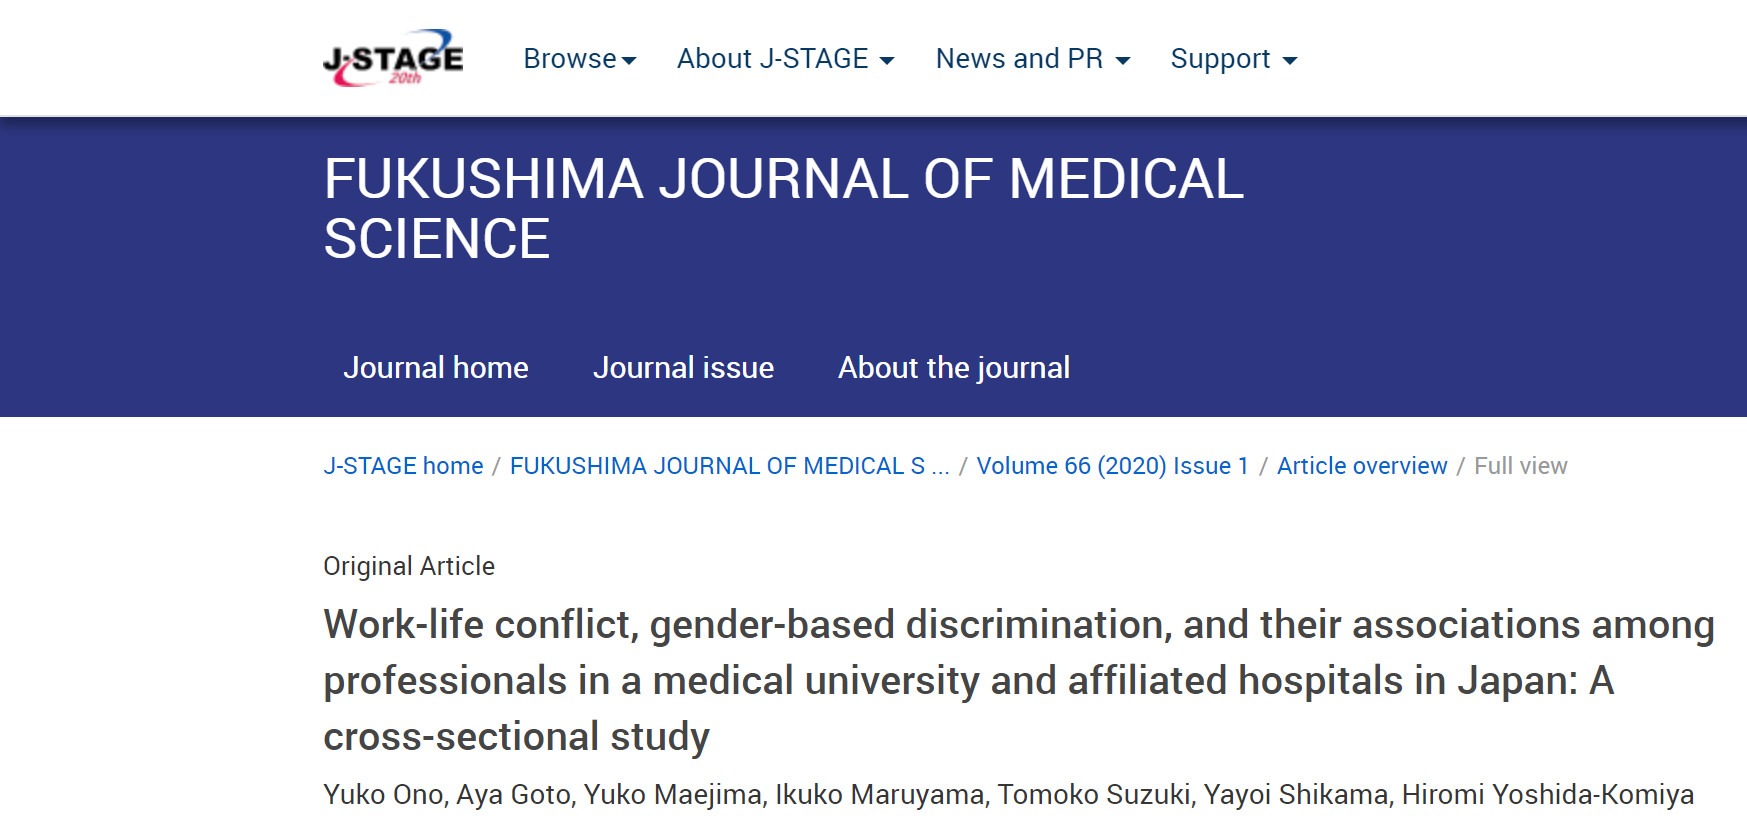 【研究成果】大野 雄康らの研究成果がFukushima J Med Sciに掲載されました